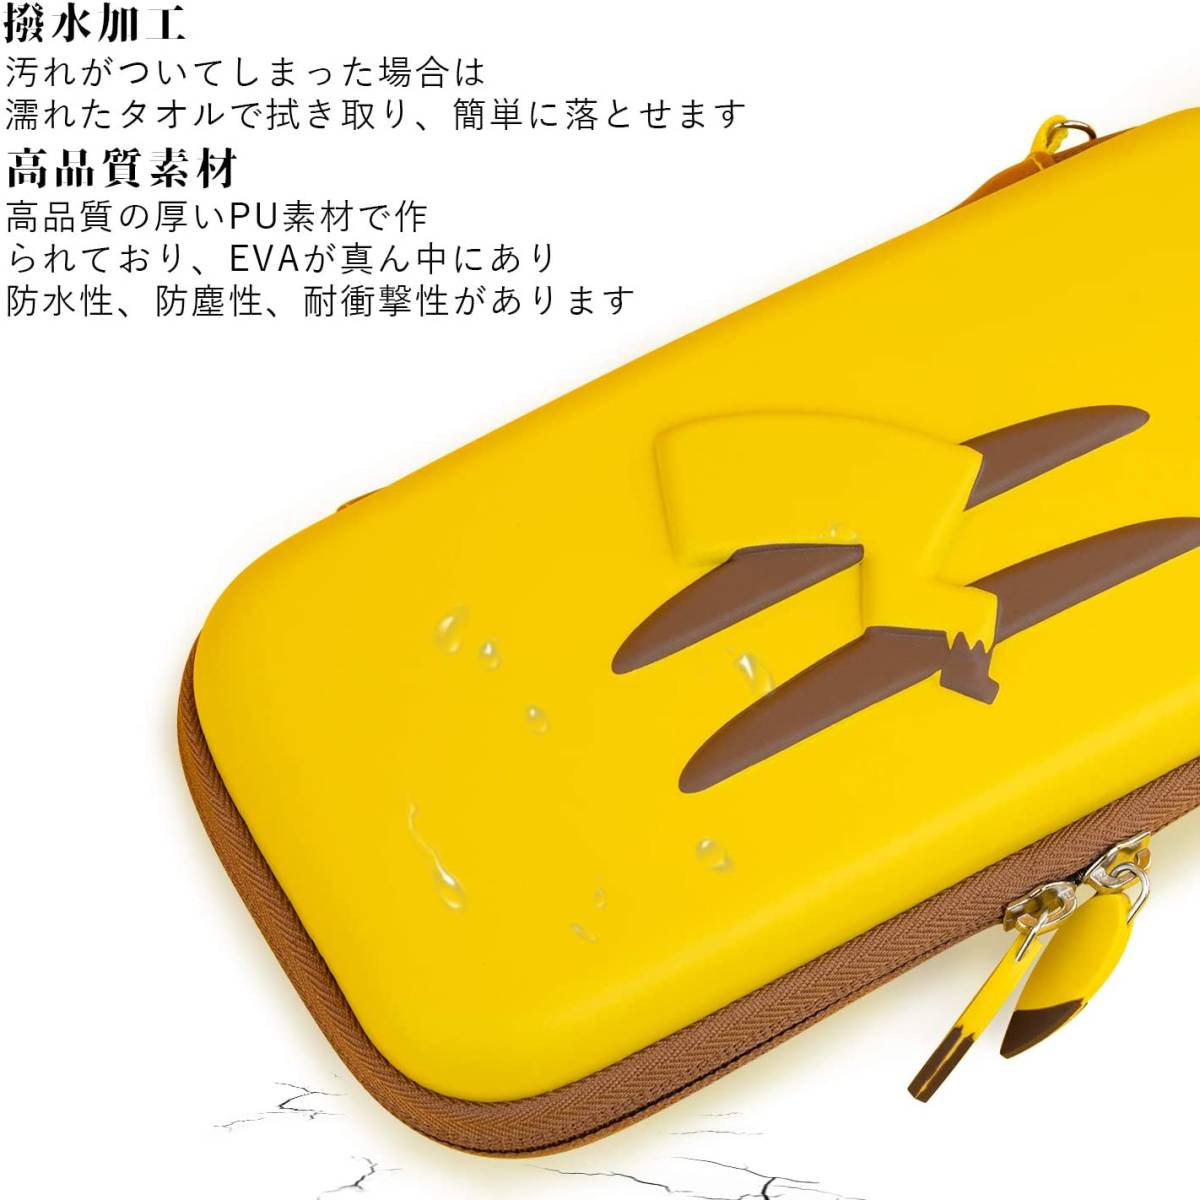 ピカチュウ EVA素材 高品質PU 内側ビロード材 耐衝撃 Nintendo Switch ケース ニンテンドー スイッチ 収納バッグ 小物収納可能 Switch